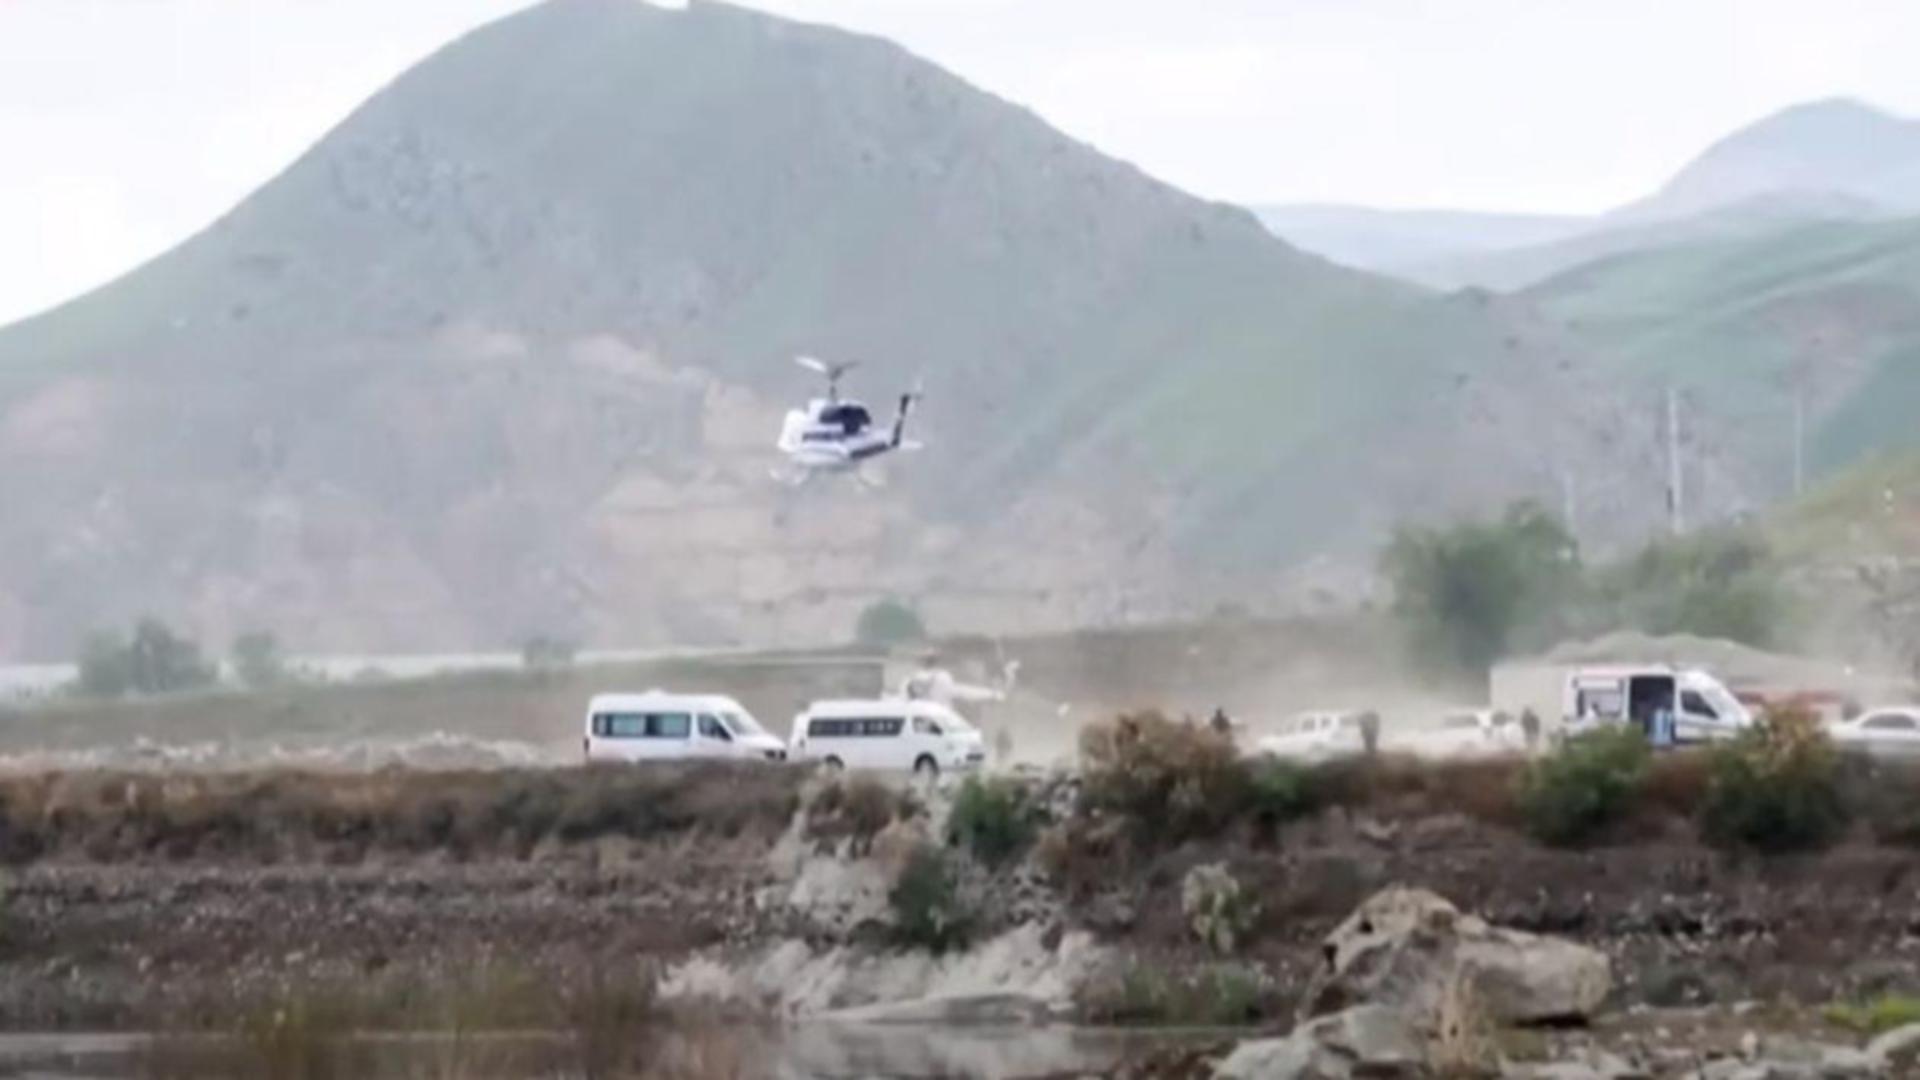 S-a aflat motivul prăbușirii elicopterului președintelui din Iran. Datele anchetei au fost făcute publice de autorități